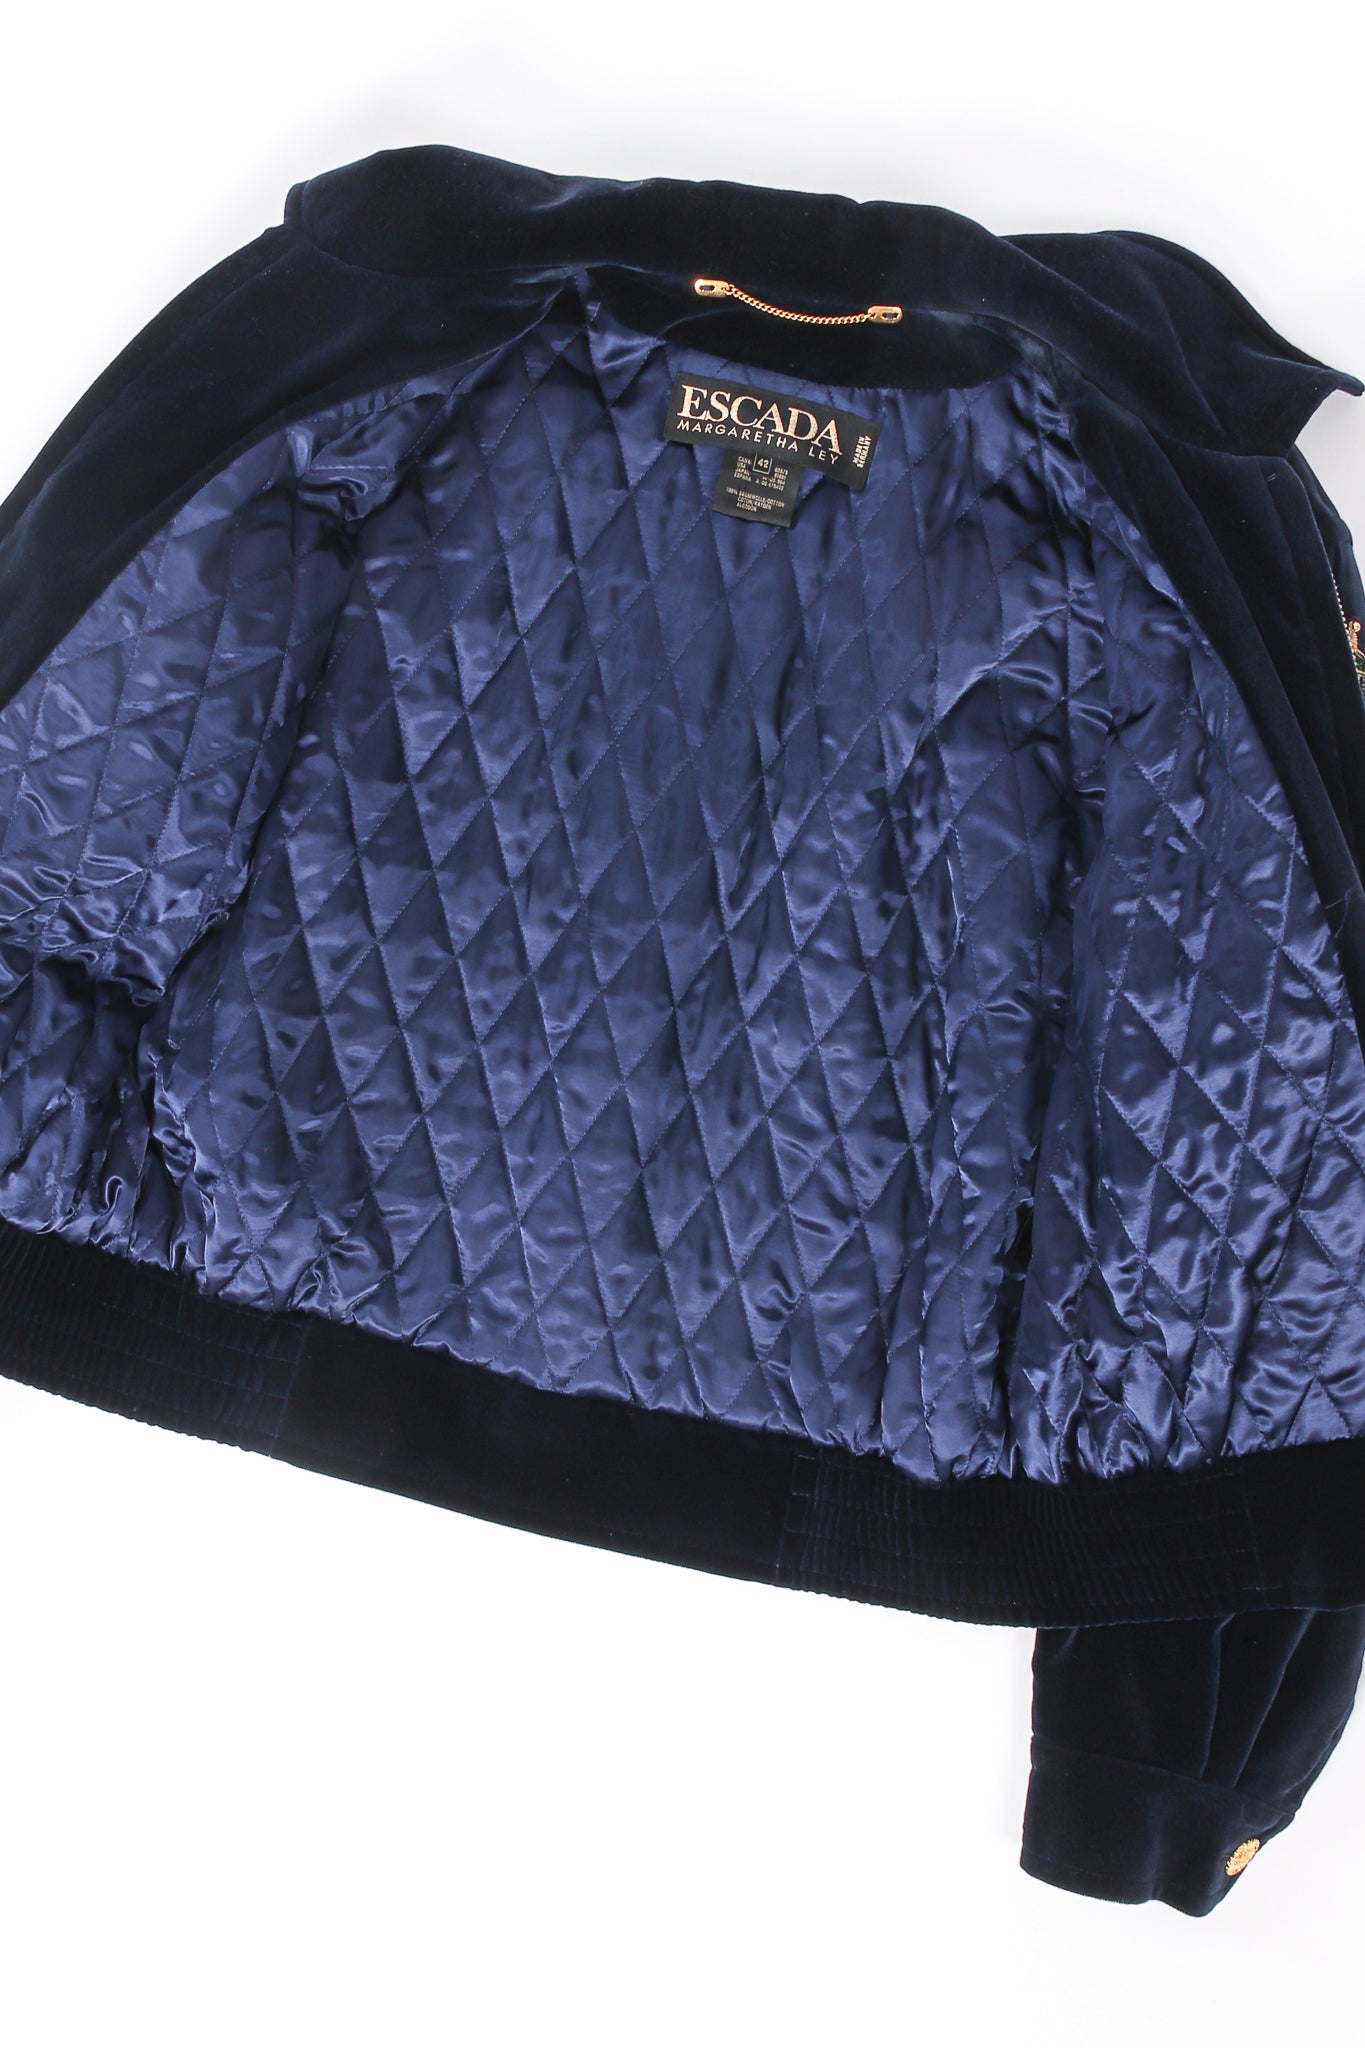 Vintage Escada Velvet Royal Appliqué Jacket lining at Recess Los Angeles